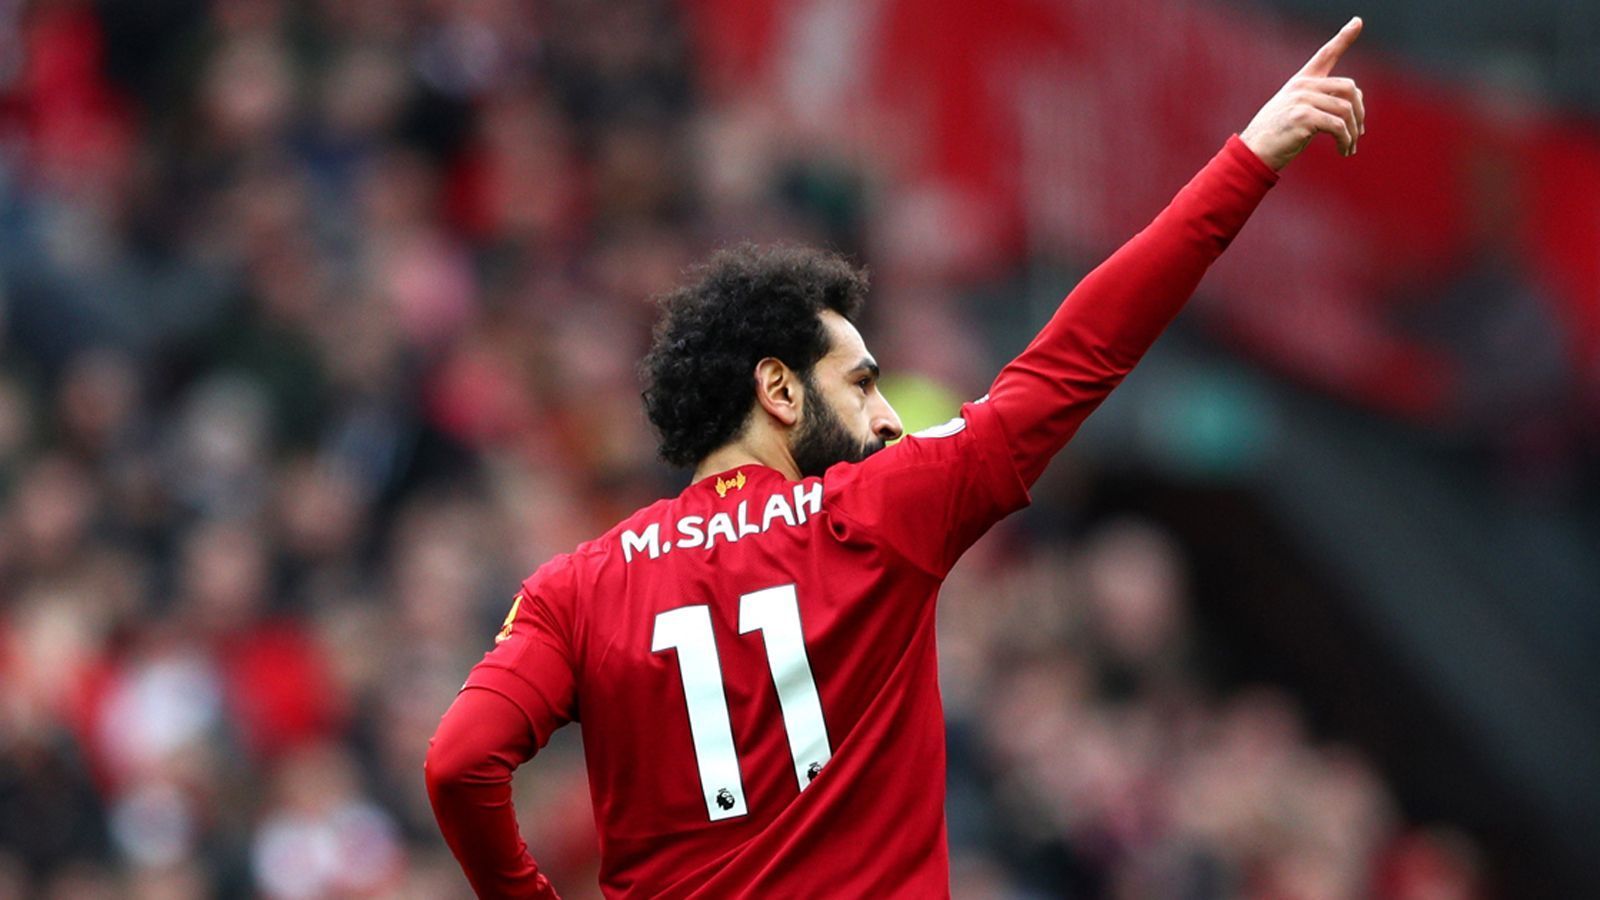 
                <strong>Platz 7: Mohamed Salah</strong><br>
                Höchstgeschwindigkeit: 35,00 km/hTeam: FC LiverpoolNationalität: Ägypten
              